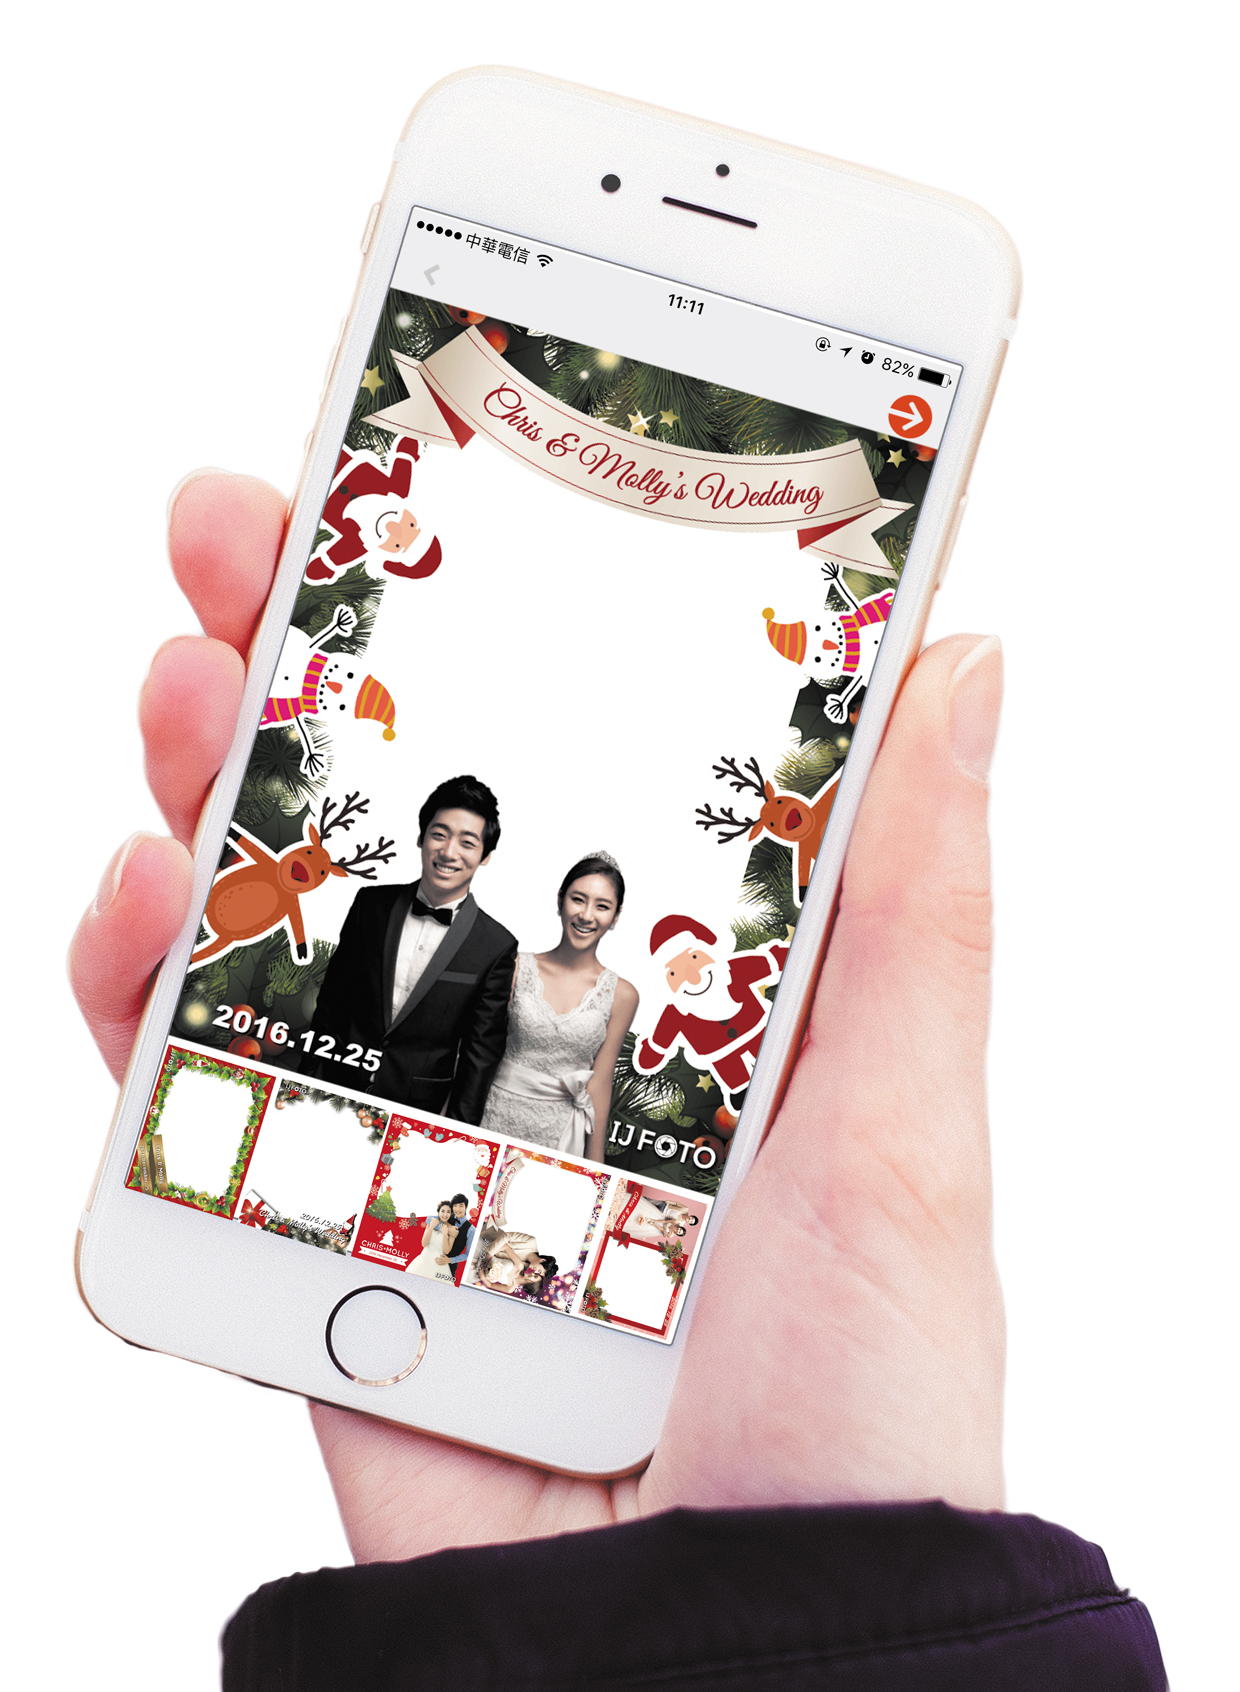 拍照app 婚禮app 主題婚禮 拍照框 